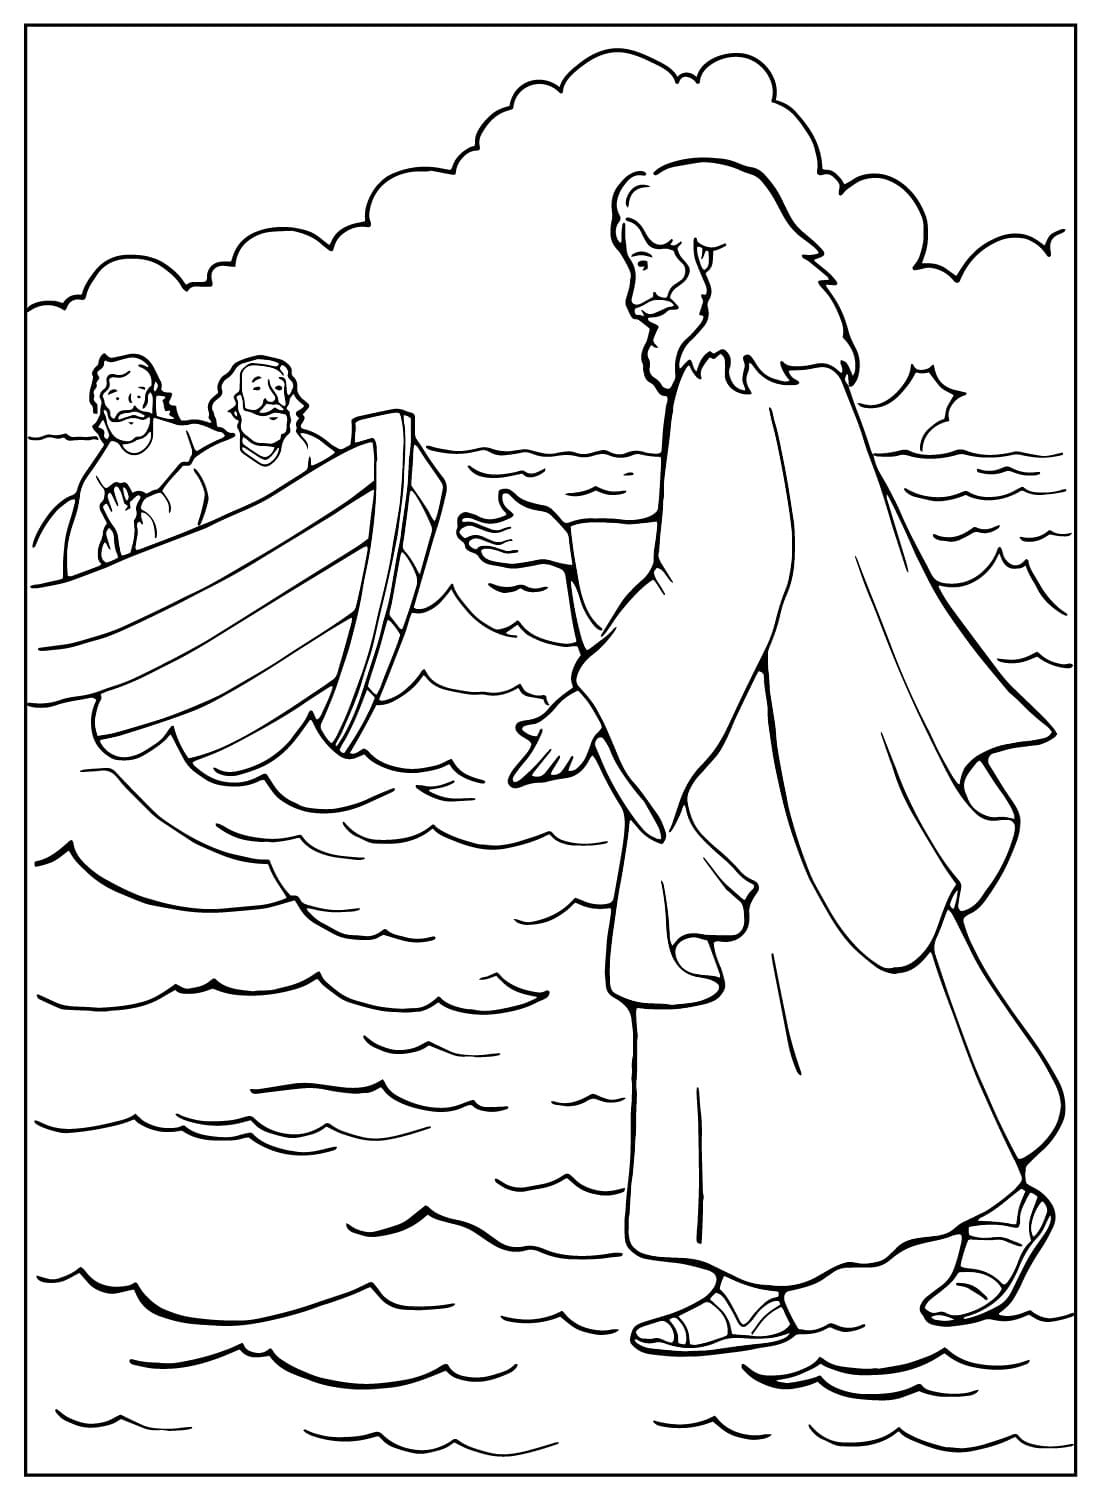 耶稣在海上行走 耶稣的彩页